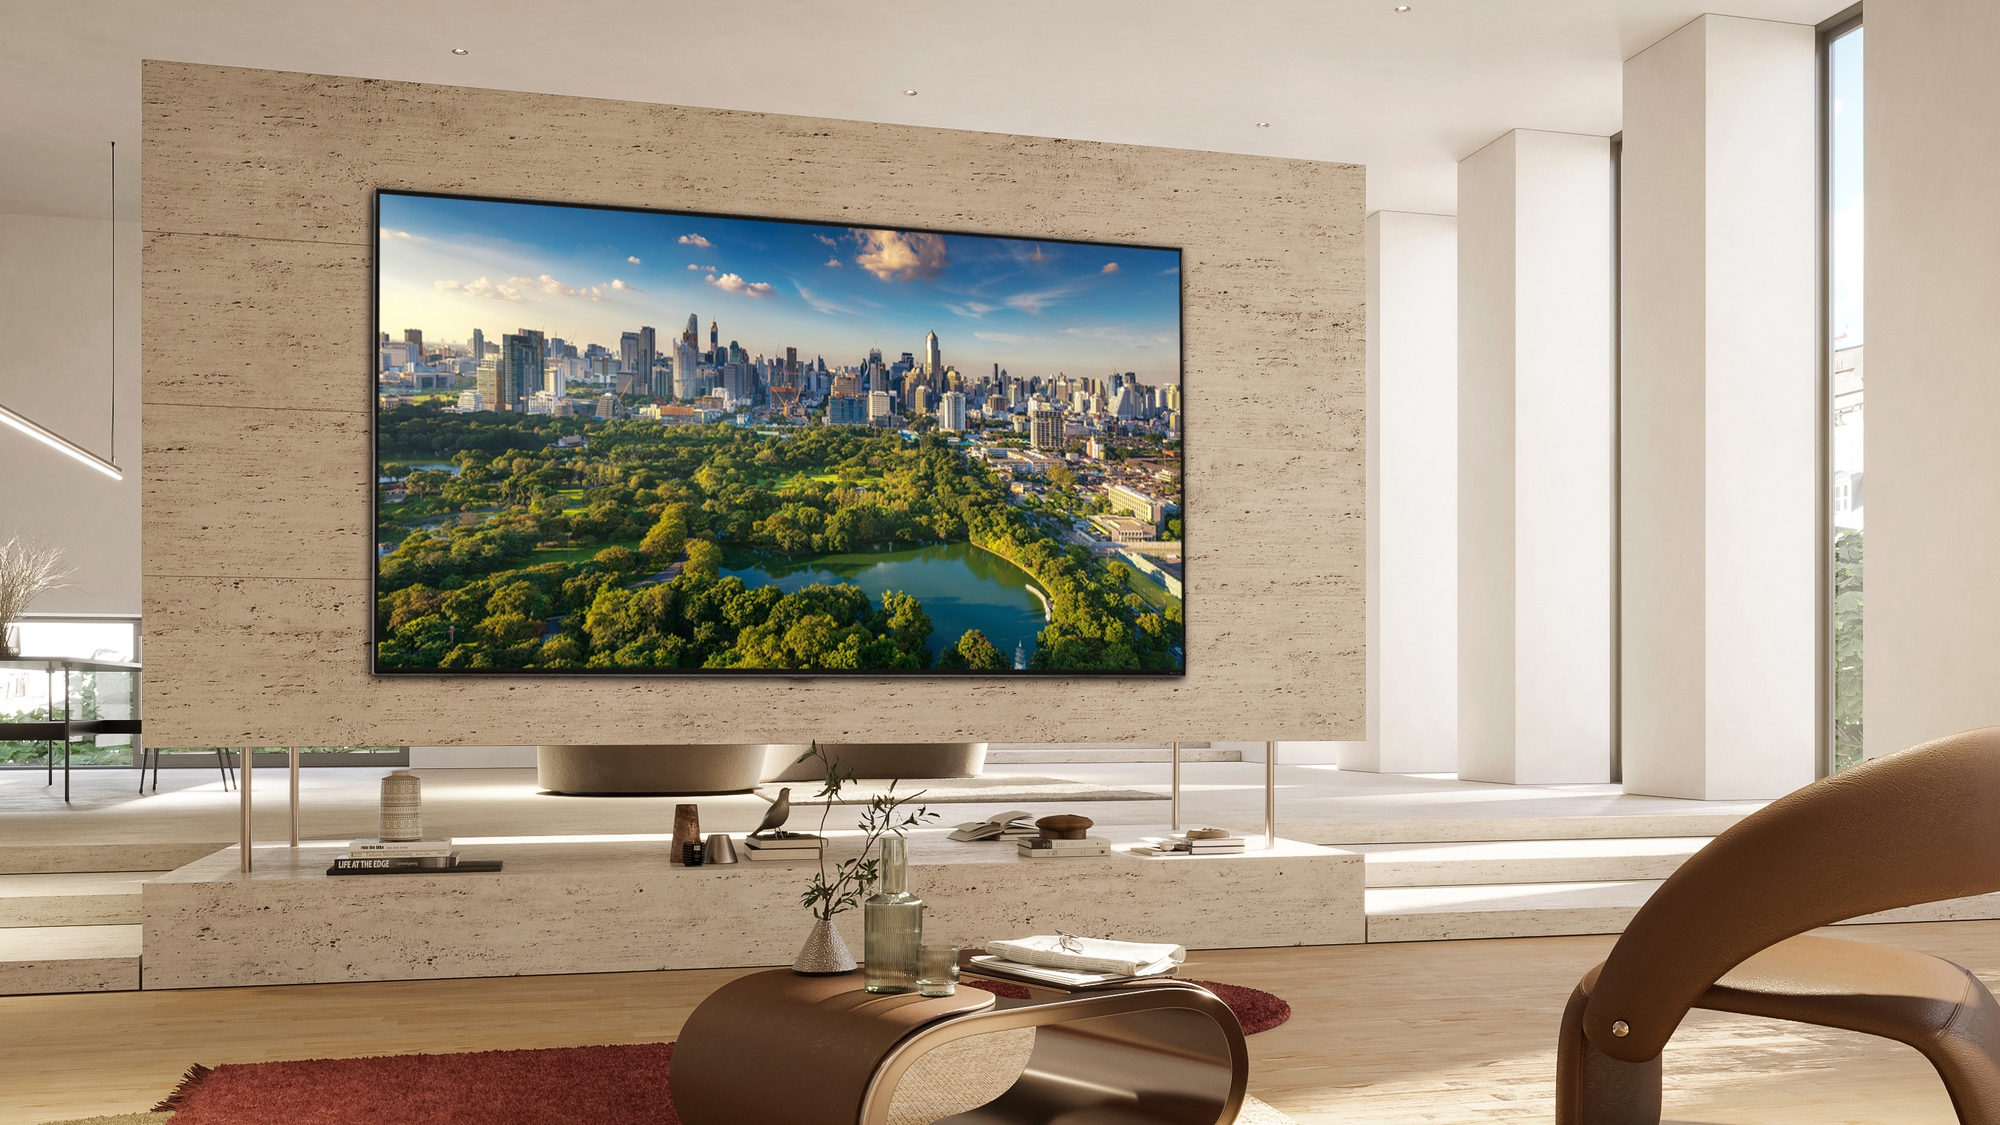 LG ra mắt loạt TV mới, đánh dấu 10 năm gia nhập thị trường TV OLED toàn cầu - Ảnh 5.